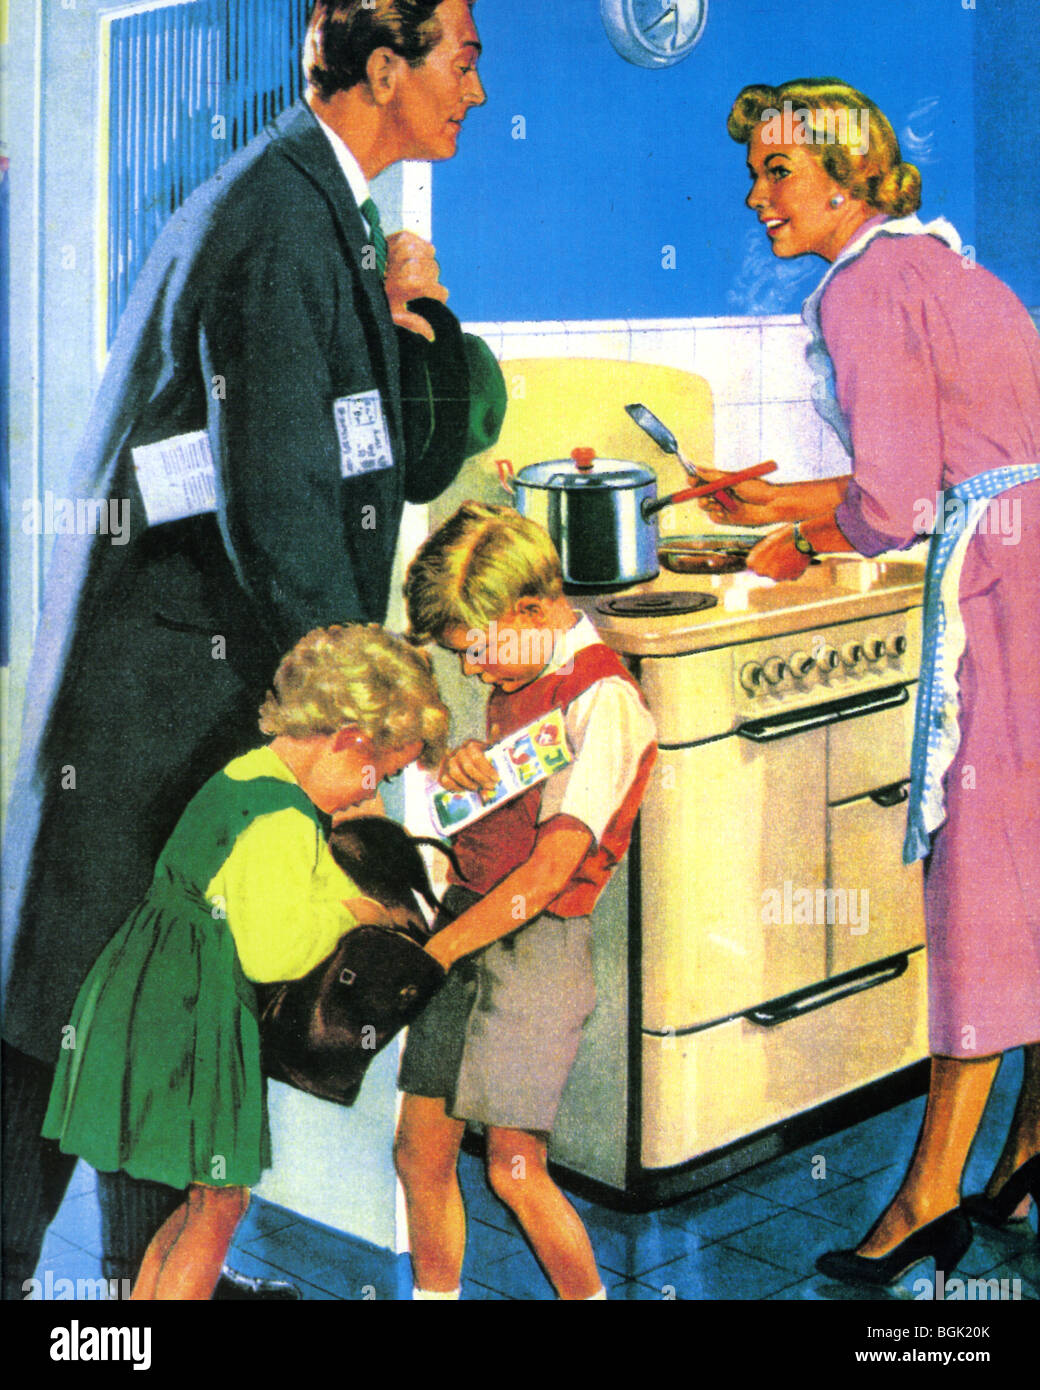 Днем возвращалась с работы мама. Norman Rockwell художник домохозяйка. Американская семья 50-х. Американская семья ретро. Ретро иллюстрации американская семья.